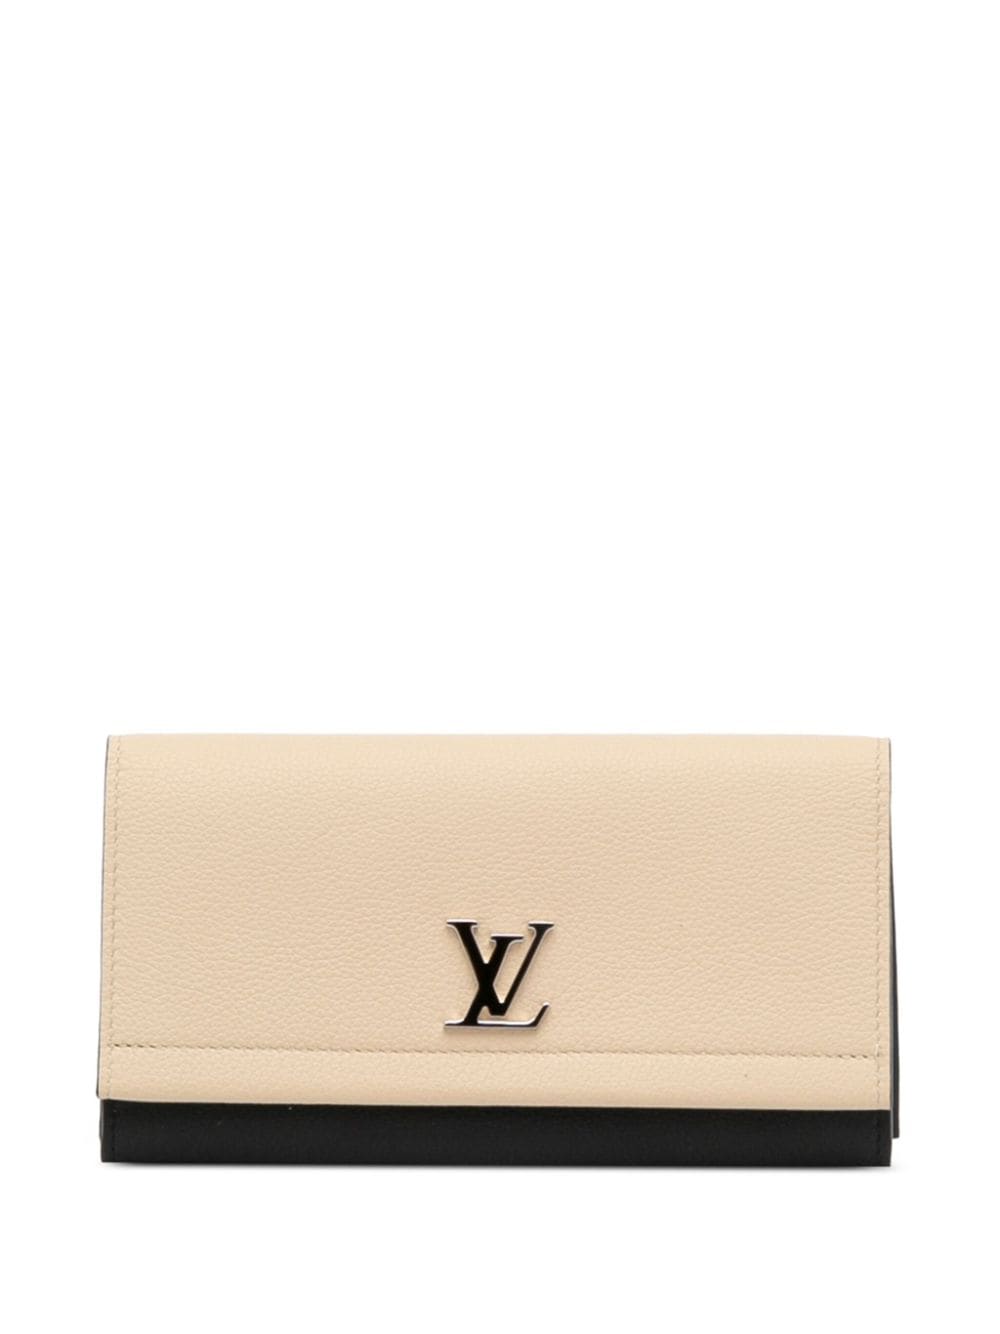 Louis Vuitton Lockme II Wallet